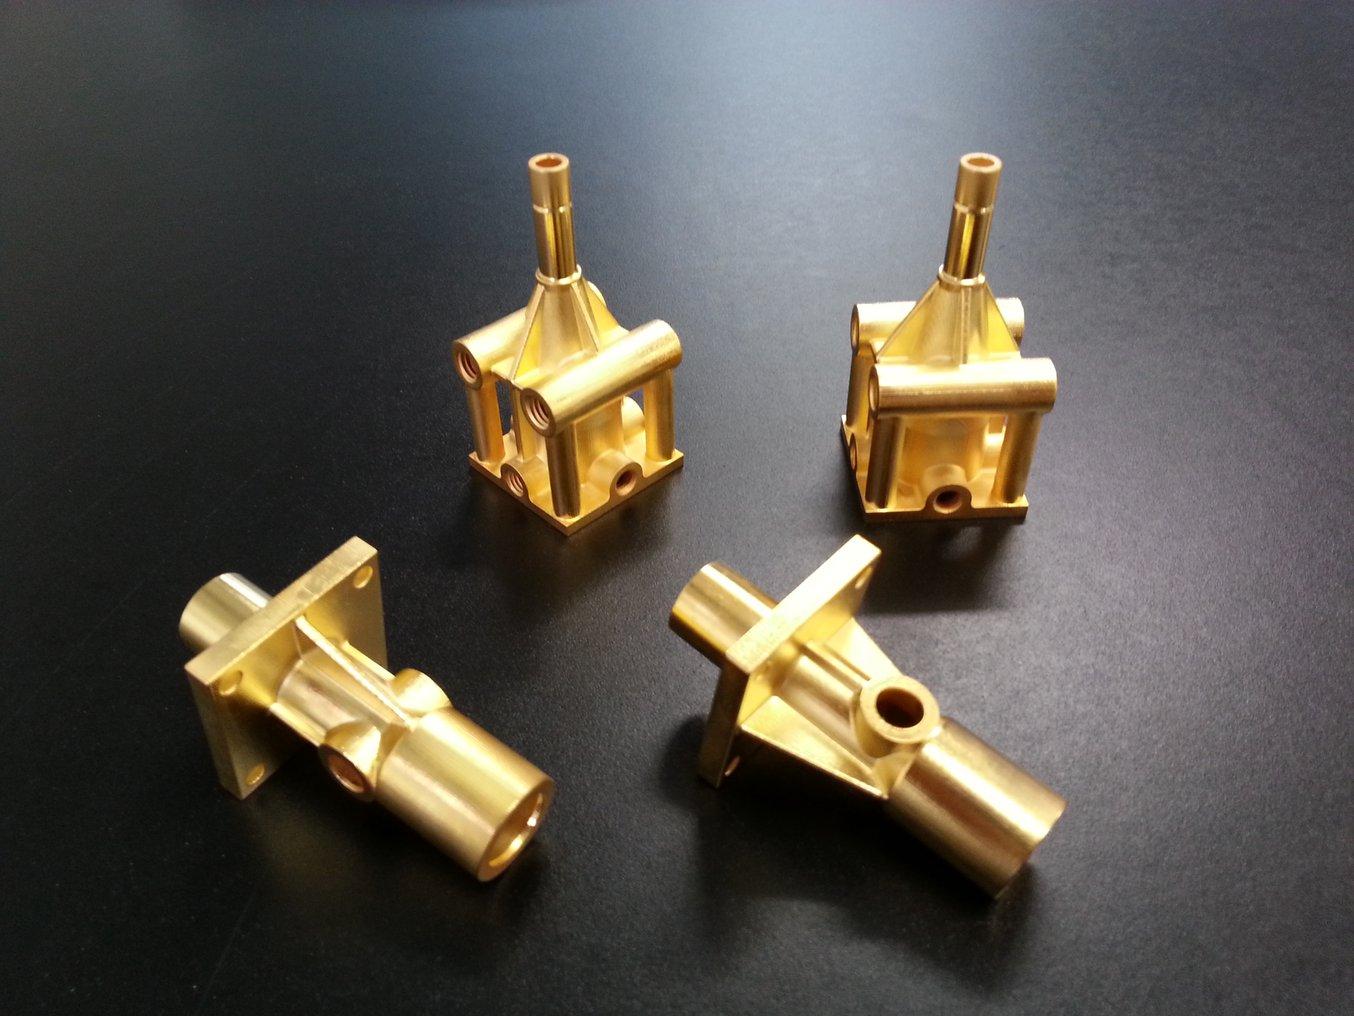 Parti 3D stampate in oro, galvanizzate dall'azienda svizzera Galvotec, una delle poche al mondo specializzate in rivestimenti metallici per la prototipazione rapida. La galvanizzazione serve a migliorare l'aspetto e le proprietà dei materiali.